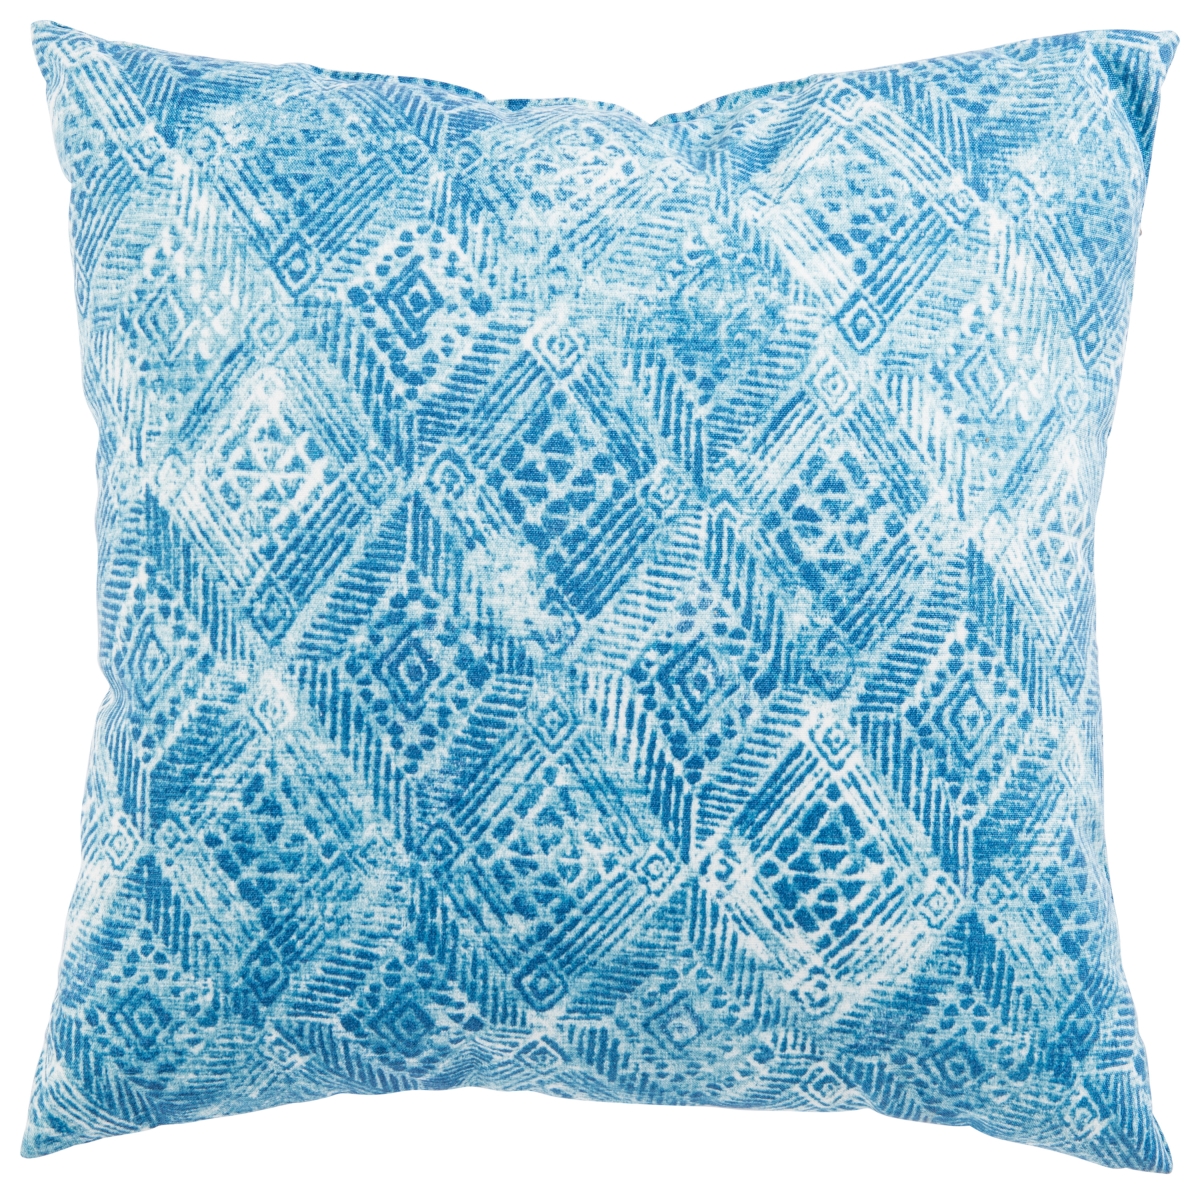 Plp100081 20 X 20 In. Veranda Darrow Fresco Blue & White Ikat Indoor & Outdoor Throw Pillow